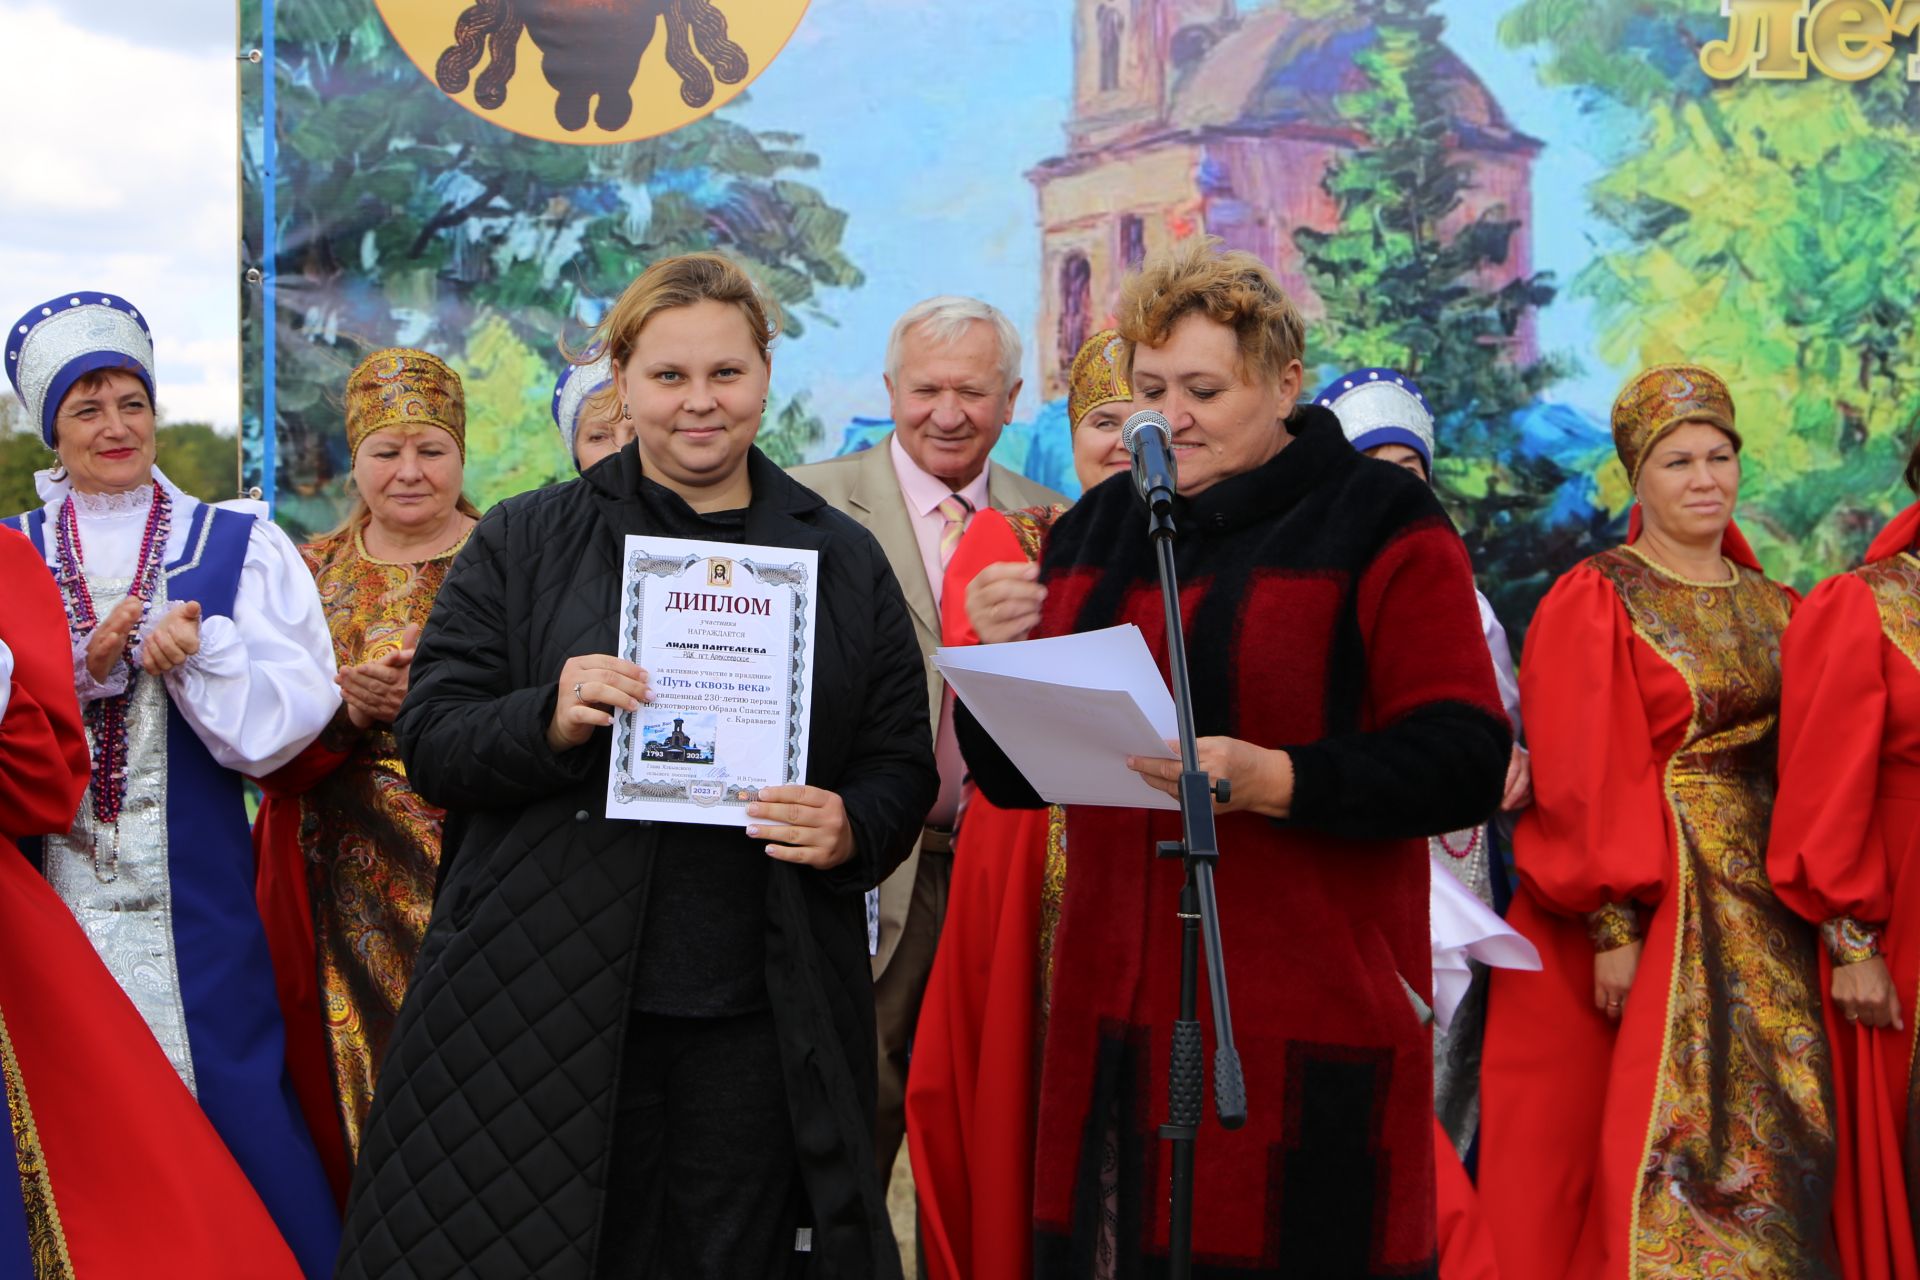 Епископ Чистопольский и Нижнекамский принял участие в торжествах в честь 230-летия храма в Караваево